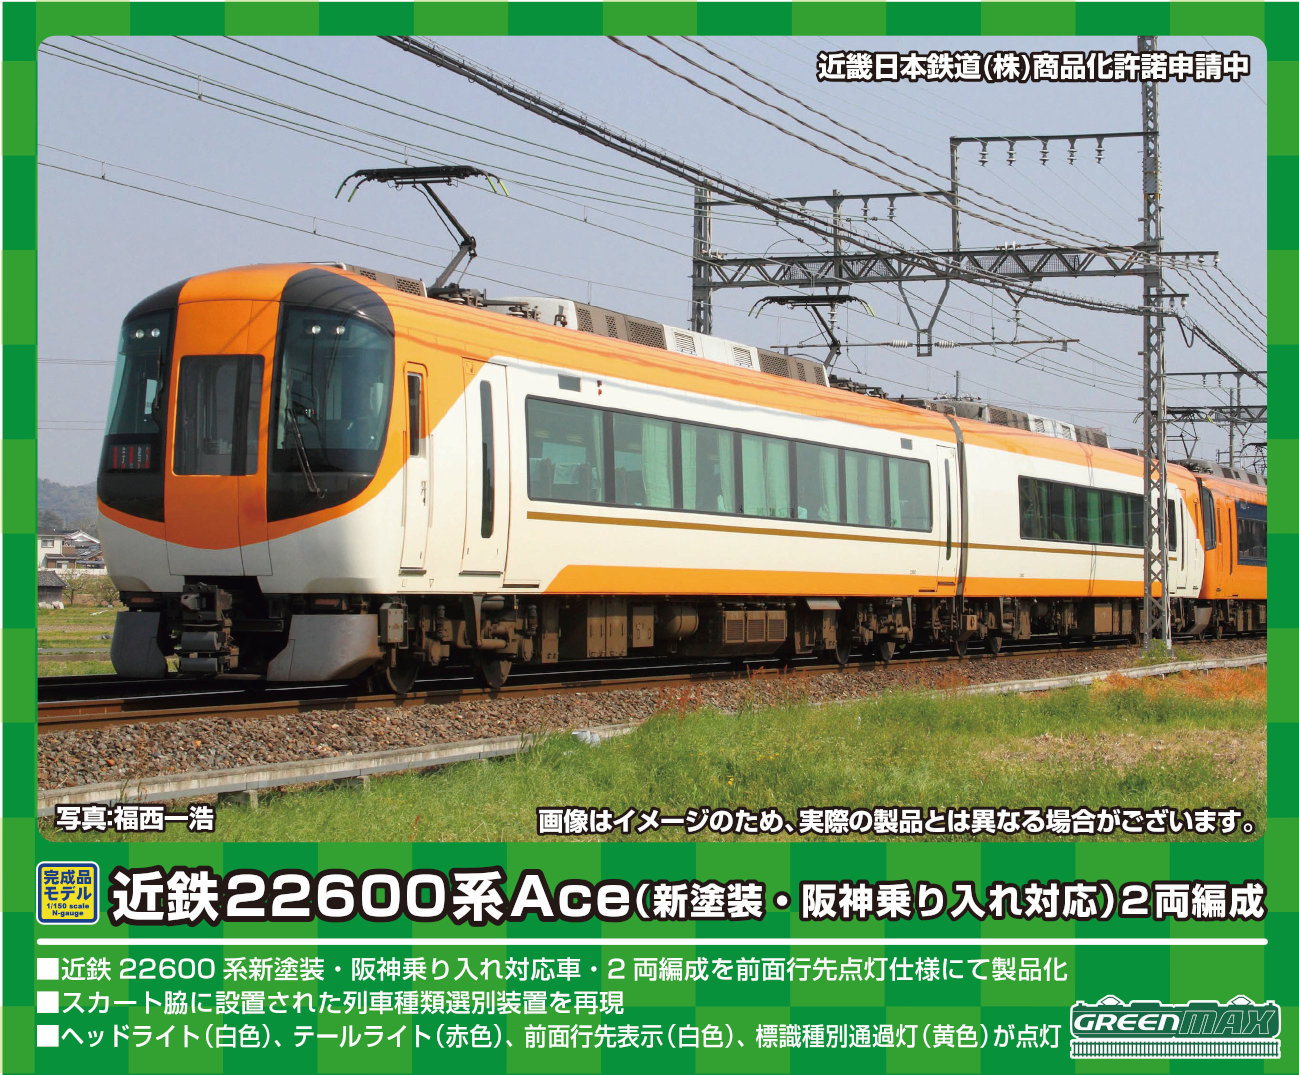 グリーンマックス 31534 近鉄22600系Ace 新塗装・阪神乗り入れ対応 